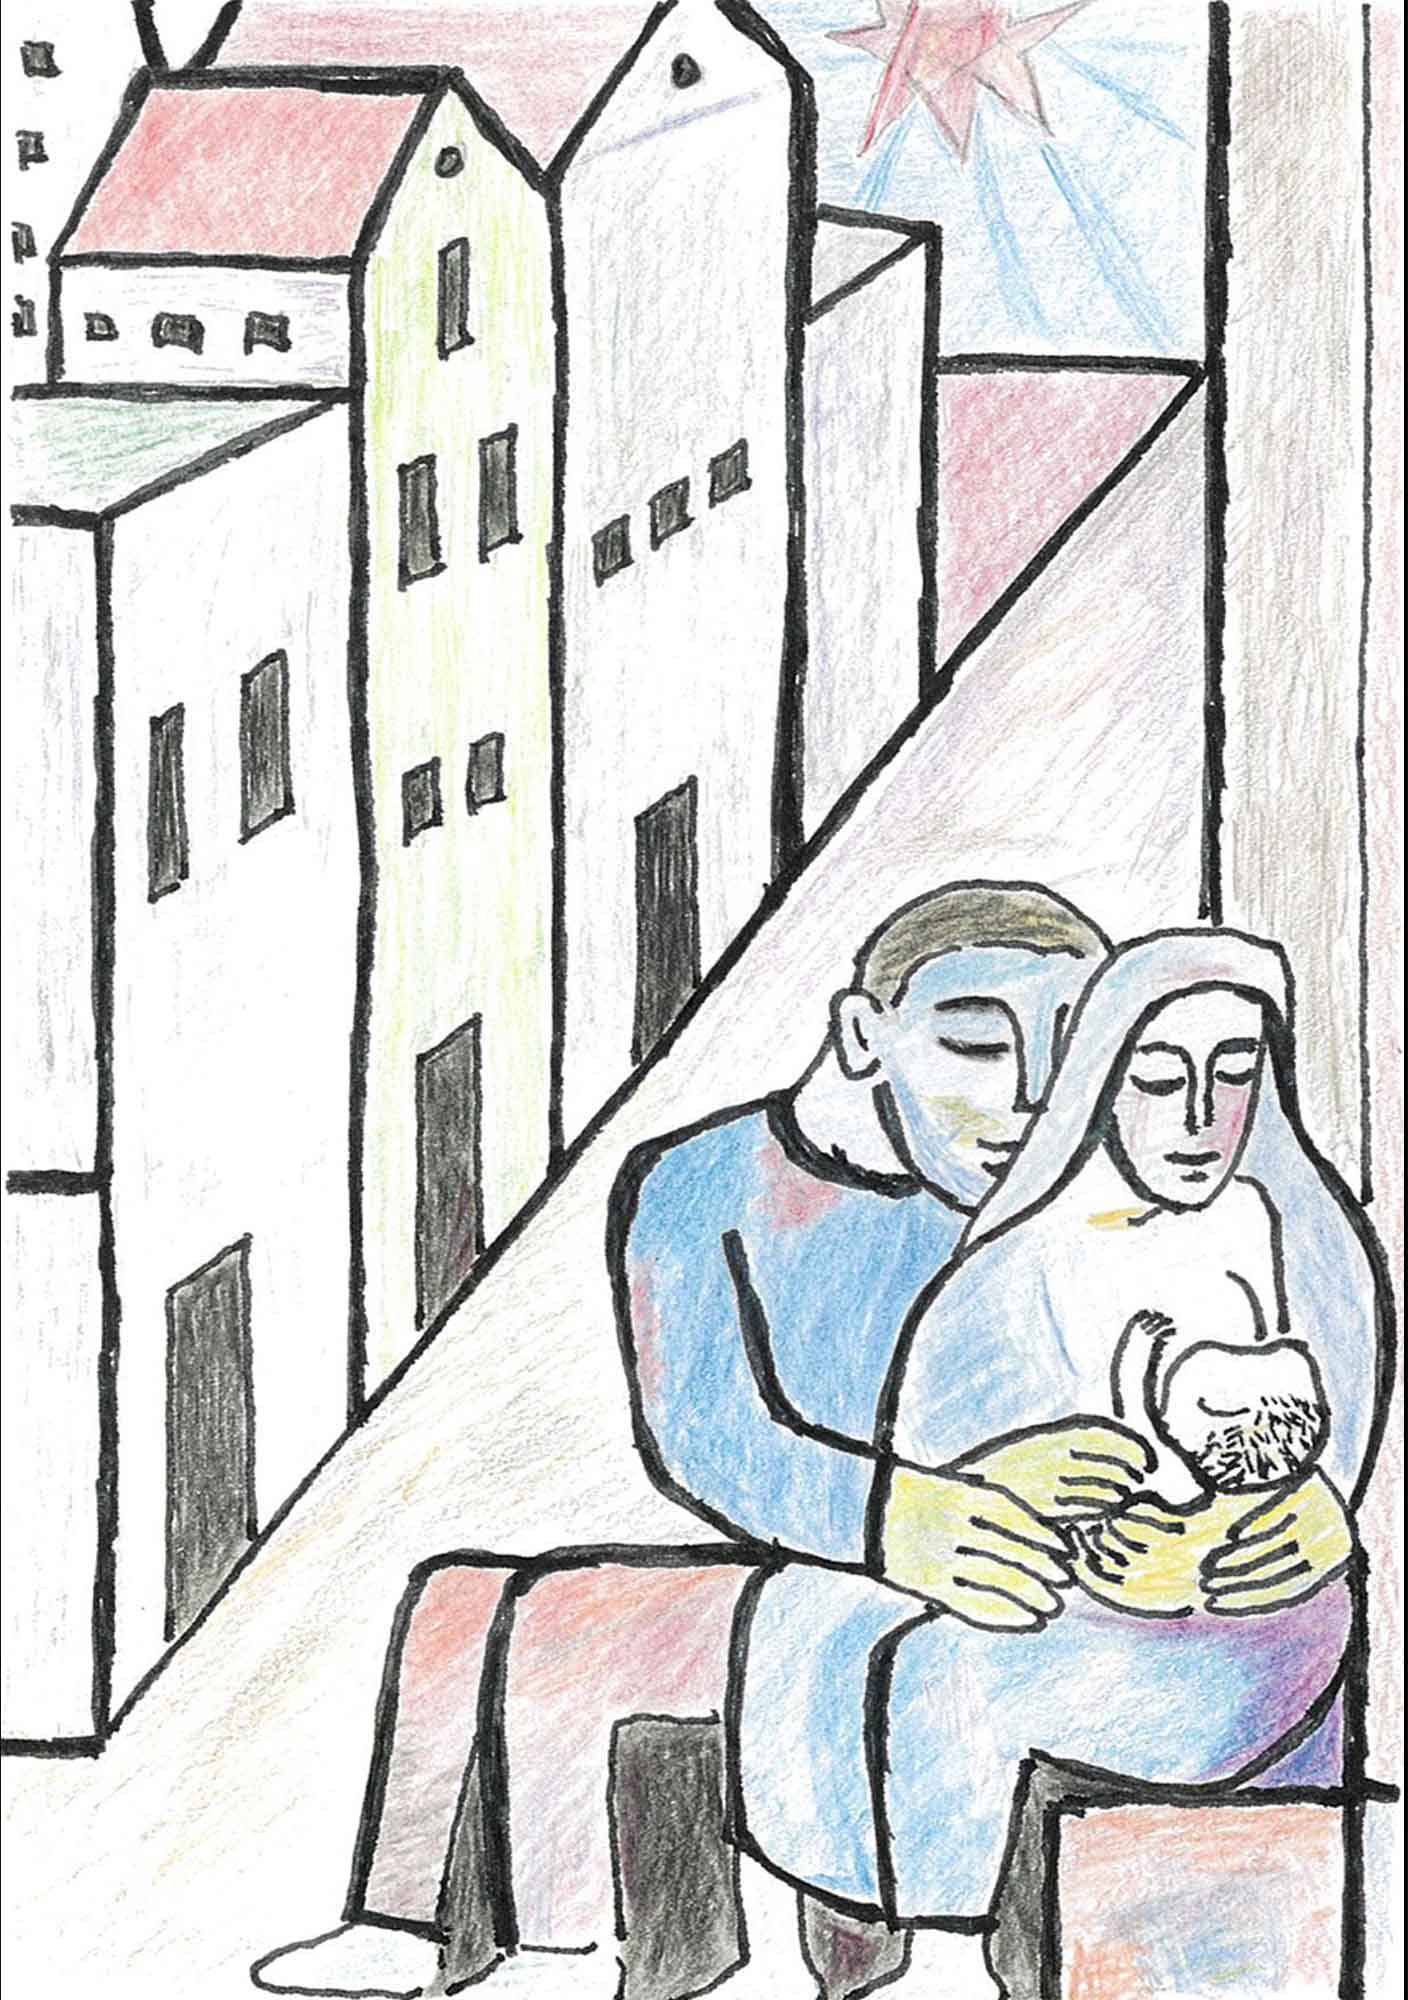 1　キリスト教美術の主題のひとつであった『聖家族』の模写である。ウィキペディア参照
用紙の左（斜め）半分に縦に建物が四棟奥に向けてある。手前から長い長方形の建物一棟、三角屋根の建物二棟。窓が描かれていない長方形の建物。その奥には青空に赤い太陽がある。四棟に沿って右に道がある。手前に聖母ヨセフ（左）と聖母マリア（右）が腰を掛けている。マリアは幼い頃（赤ん坊）のキリストに乳を与えている。ヨセフはその二人を両手で包み込むように抱いている。ヨセフとマリアは目を閉じ優しい表情である。